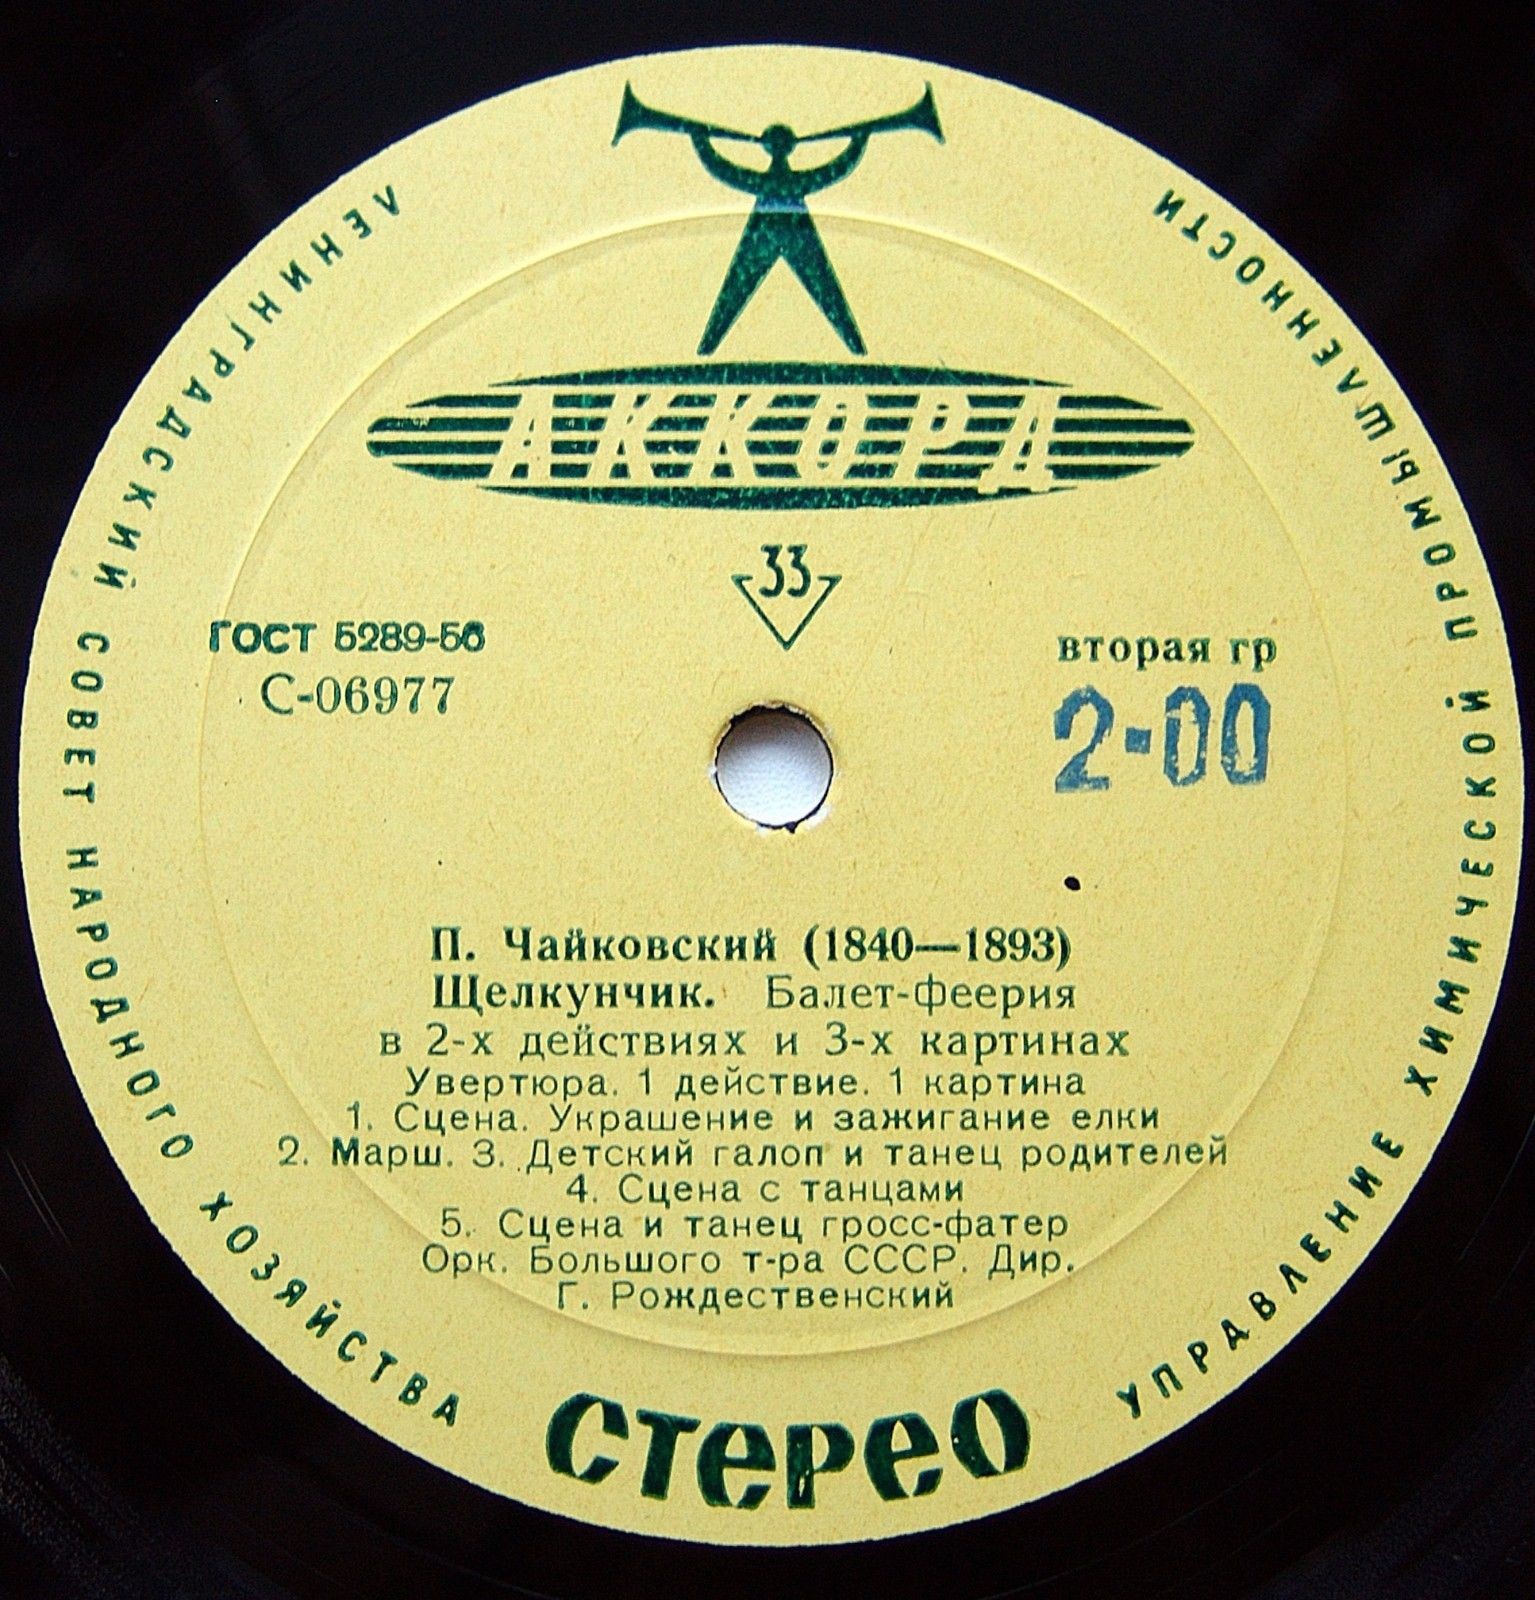 П. И. Чайковский (1840-1893). "Щелкунчик", балет-феерия в 2-х действиях, соч. 71